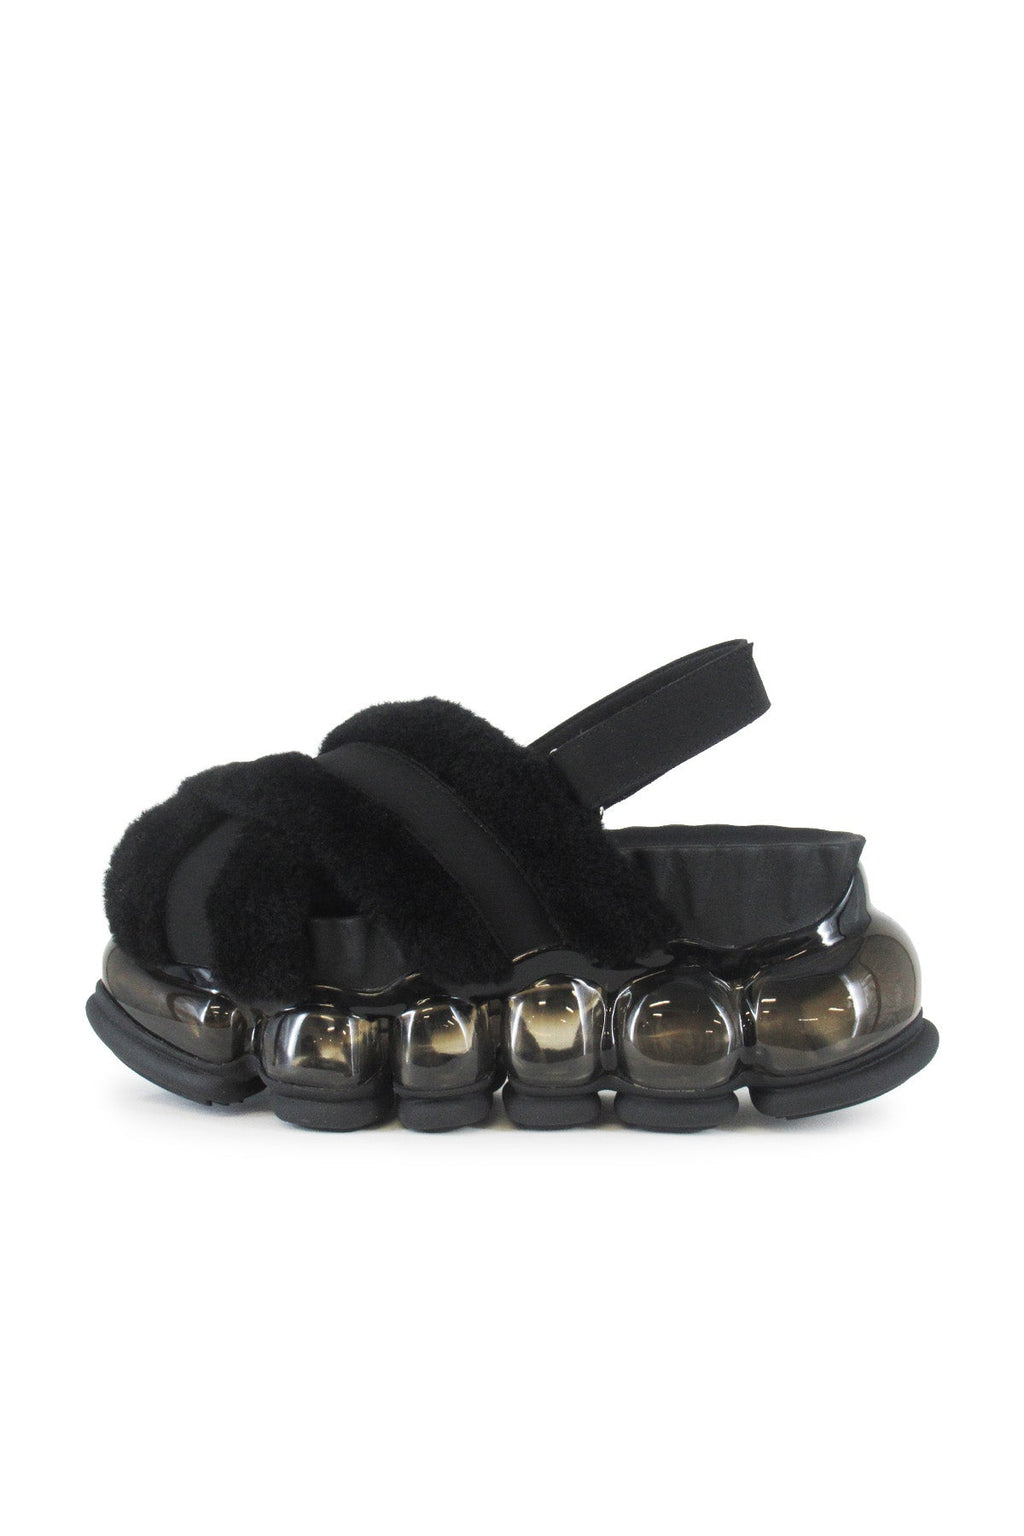 New "Jewelry" Fur Sandal / Black